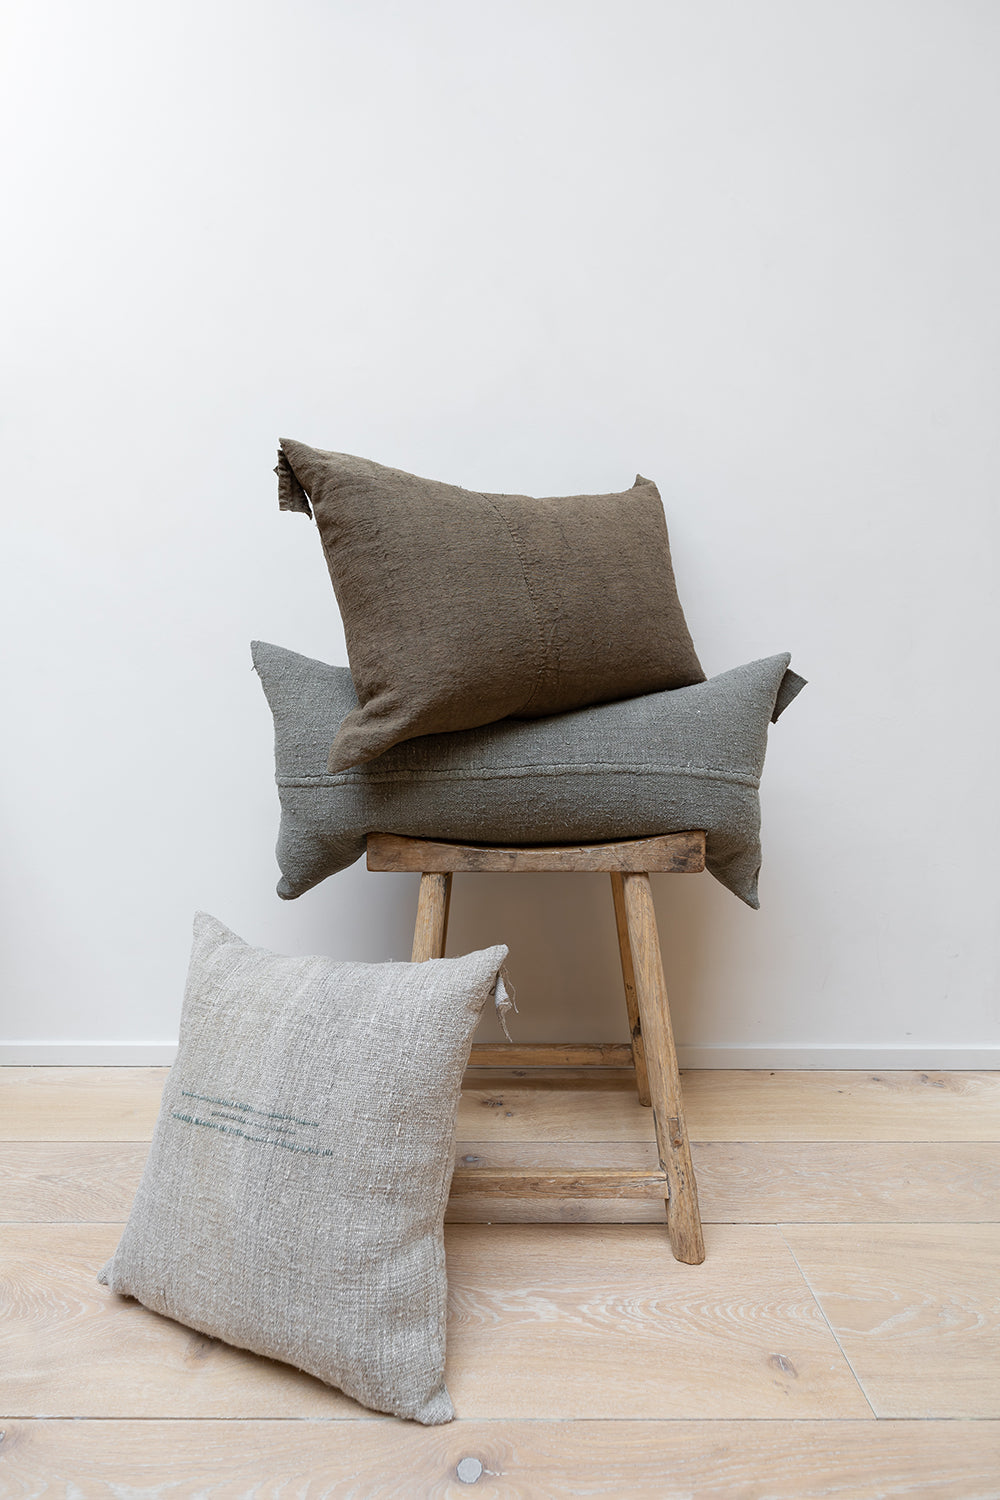 Three linen cushions on wooden stool.